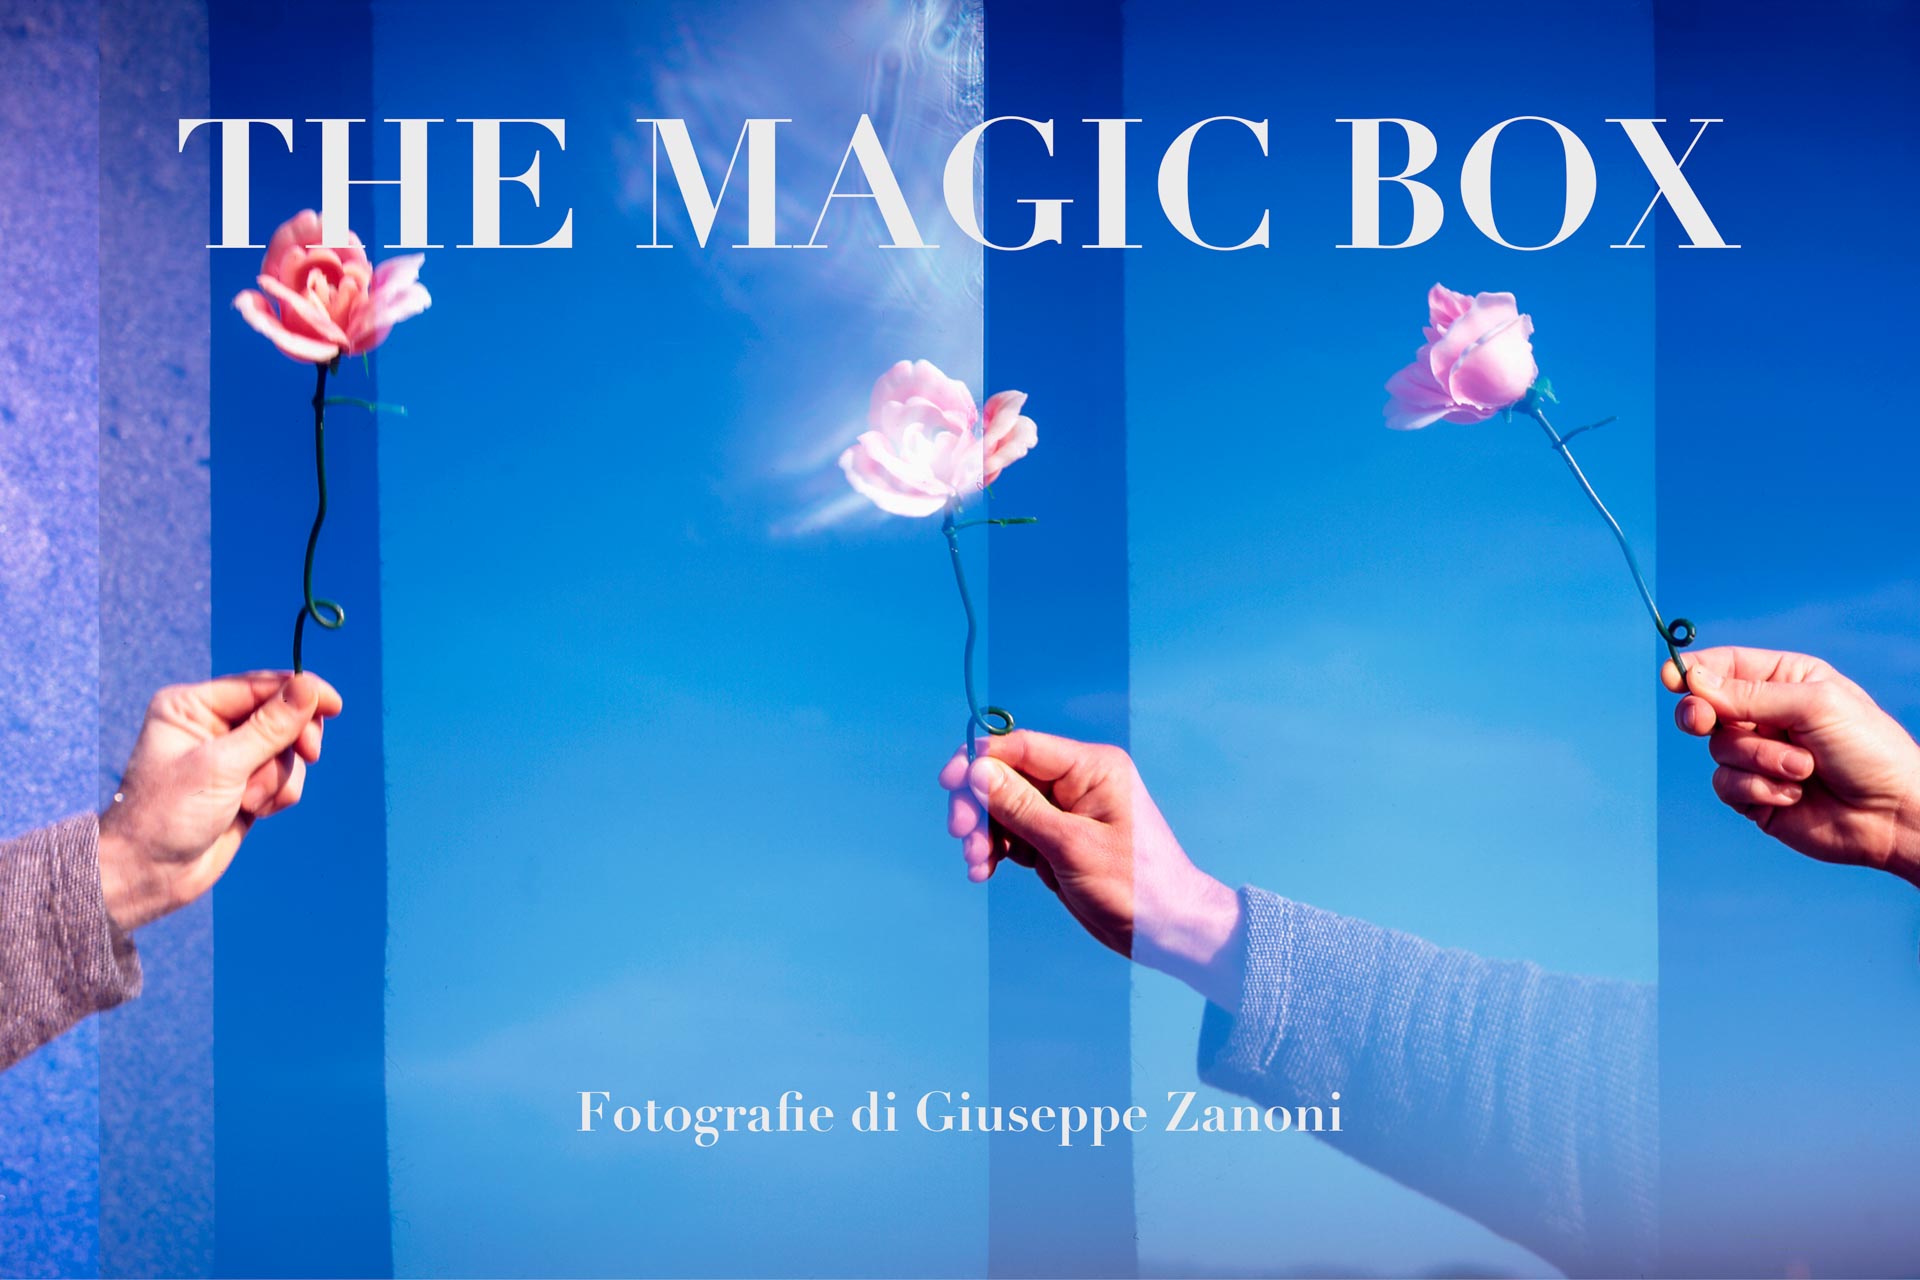 Libro fotografico “THE MAGIC BOX” 20×30 cm